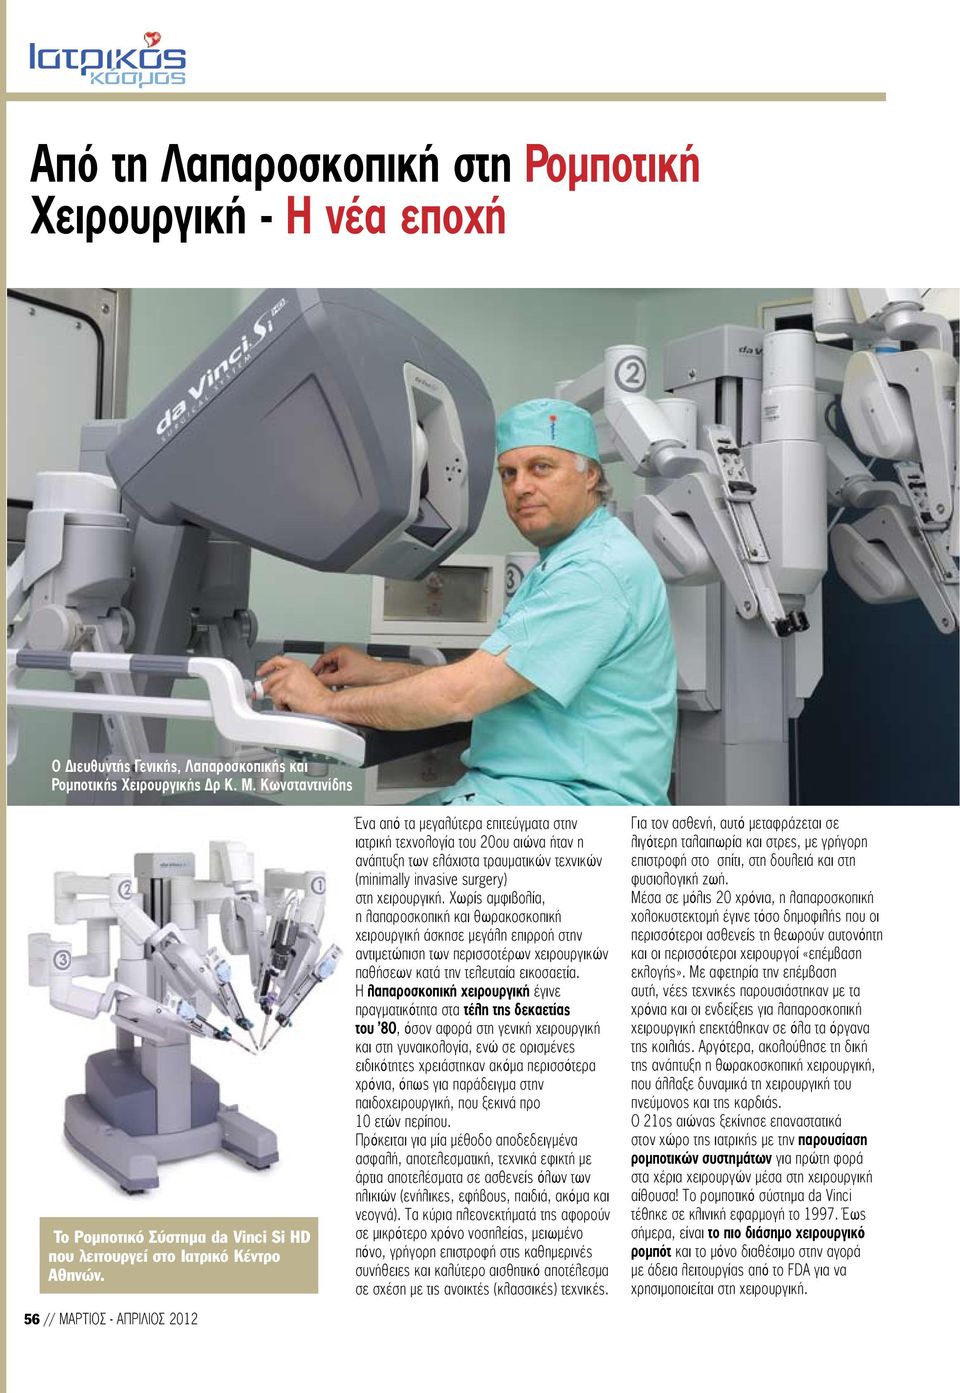 56 // ΜΑΡΤΙΟΣ - ΑΠΡΙΛΙΟΣ 2012 Ένα από τα μεγαλύτερα επιτεύγματα στην ιατρική τεχνολογία του 20ου αιώνα ήταν η ανάπτυξη των ελάχιστα τραυματικών τεχνικών (minimally invasive surgery) στη χειρουργική.